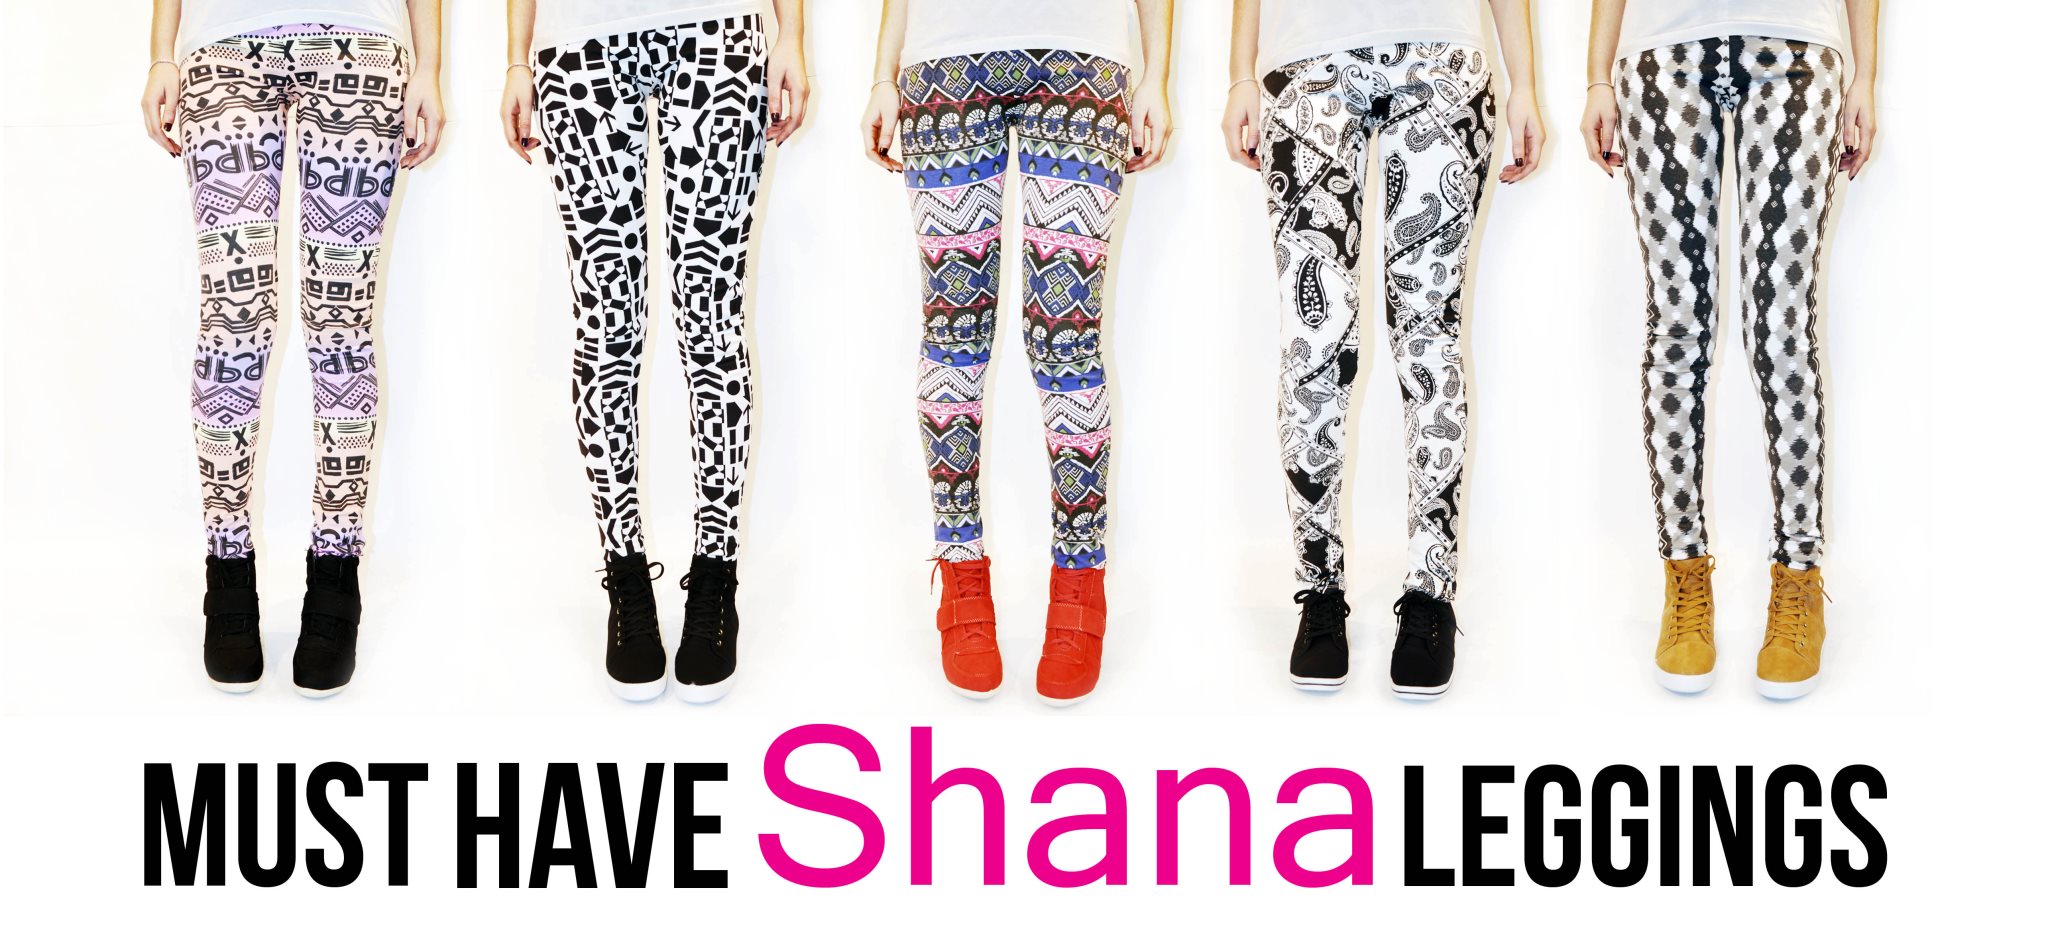 Pantalones-Shana